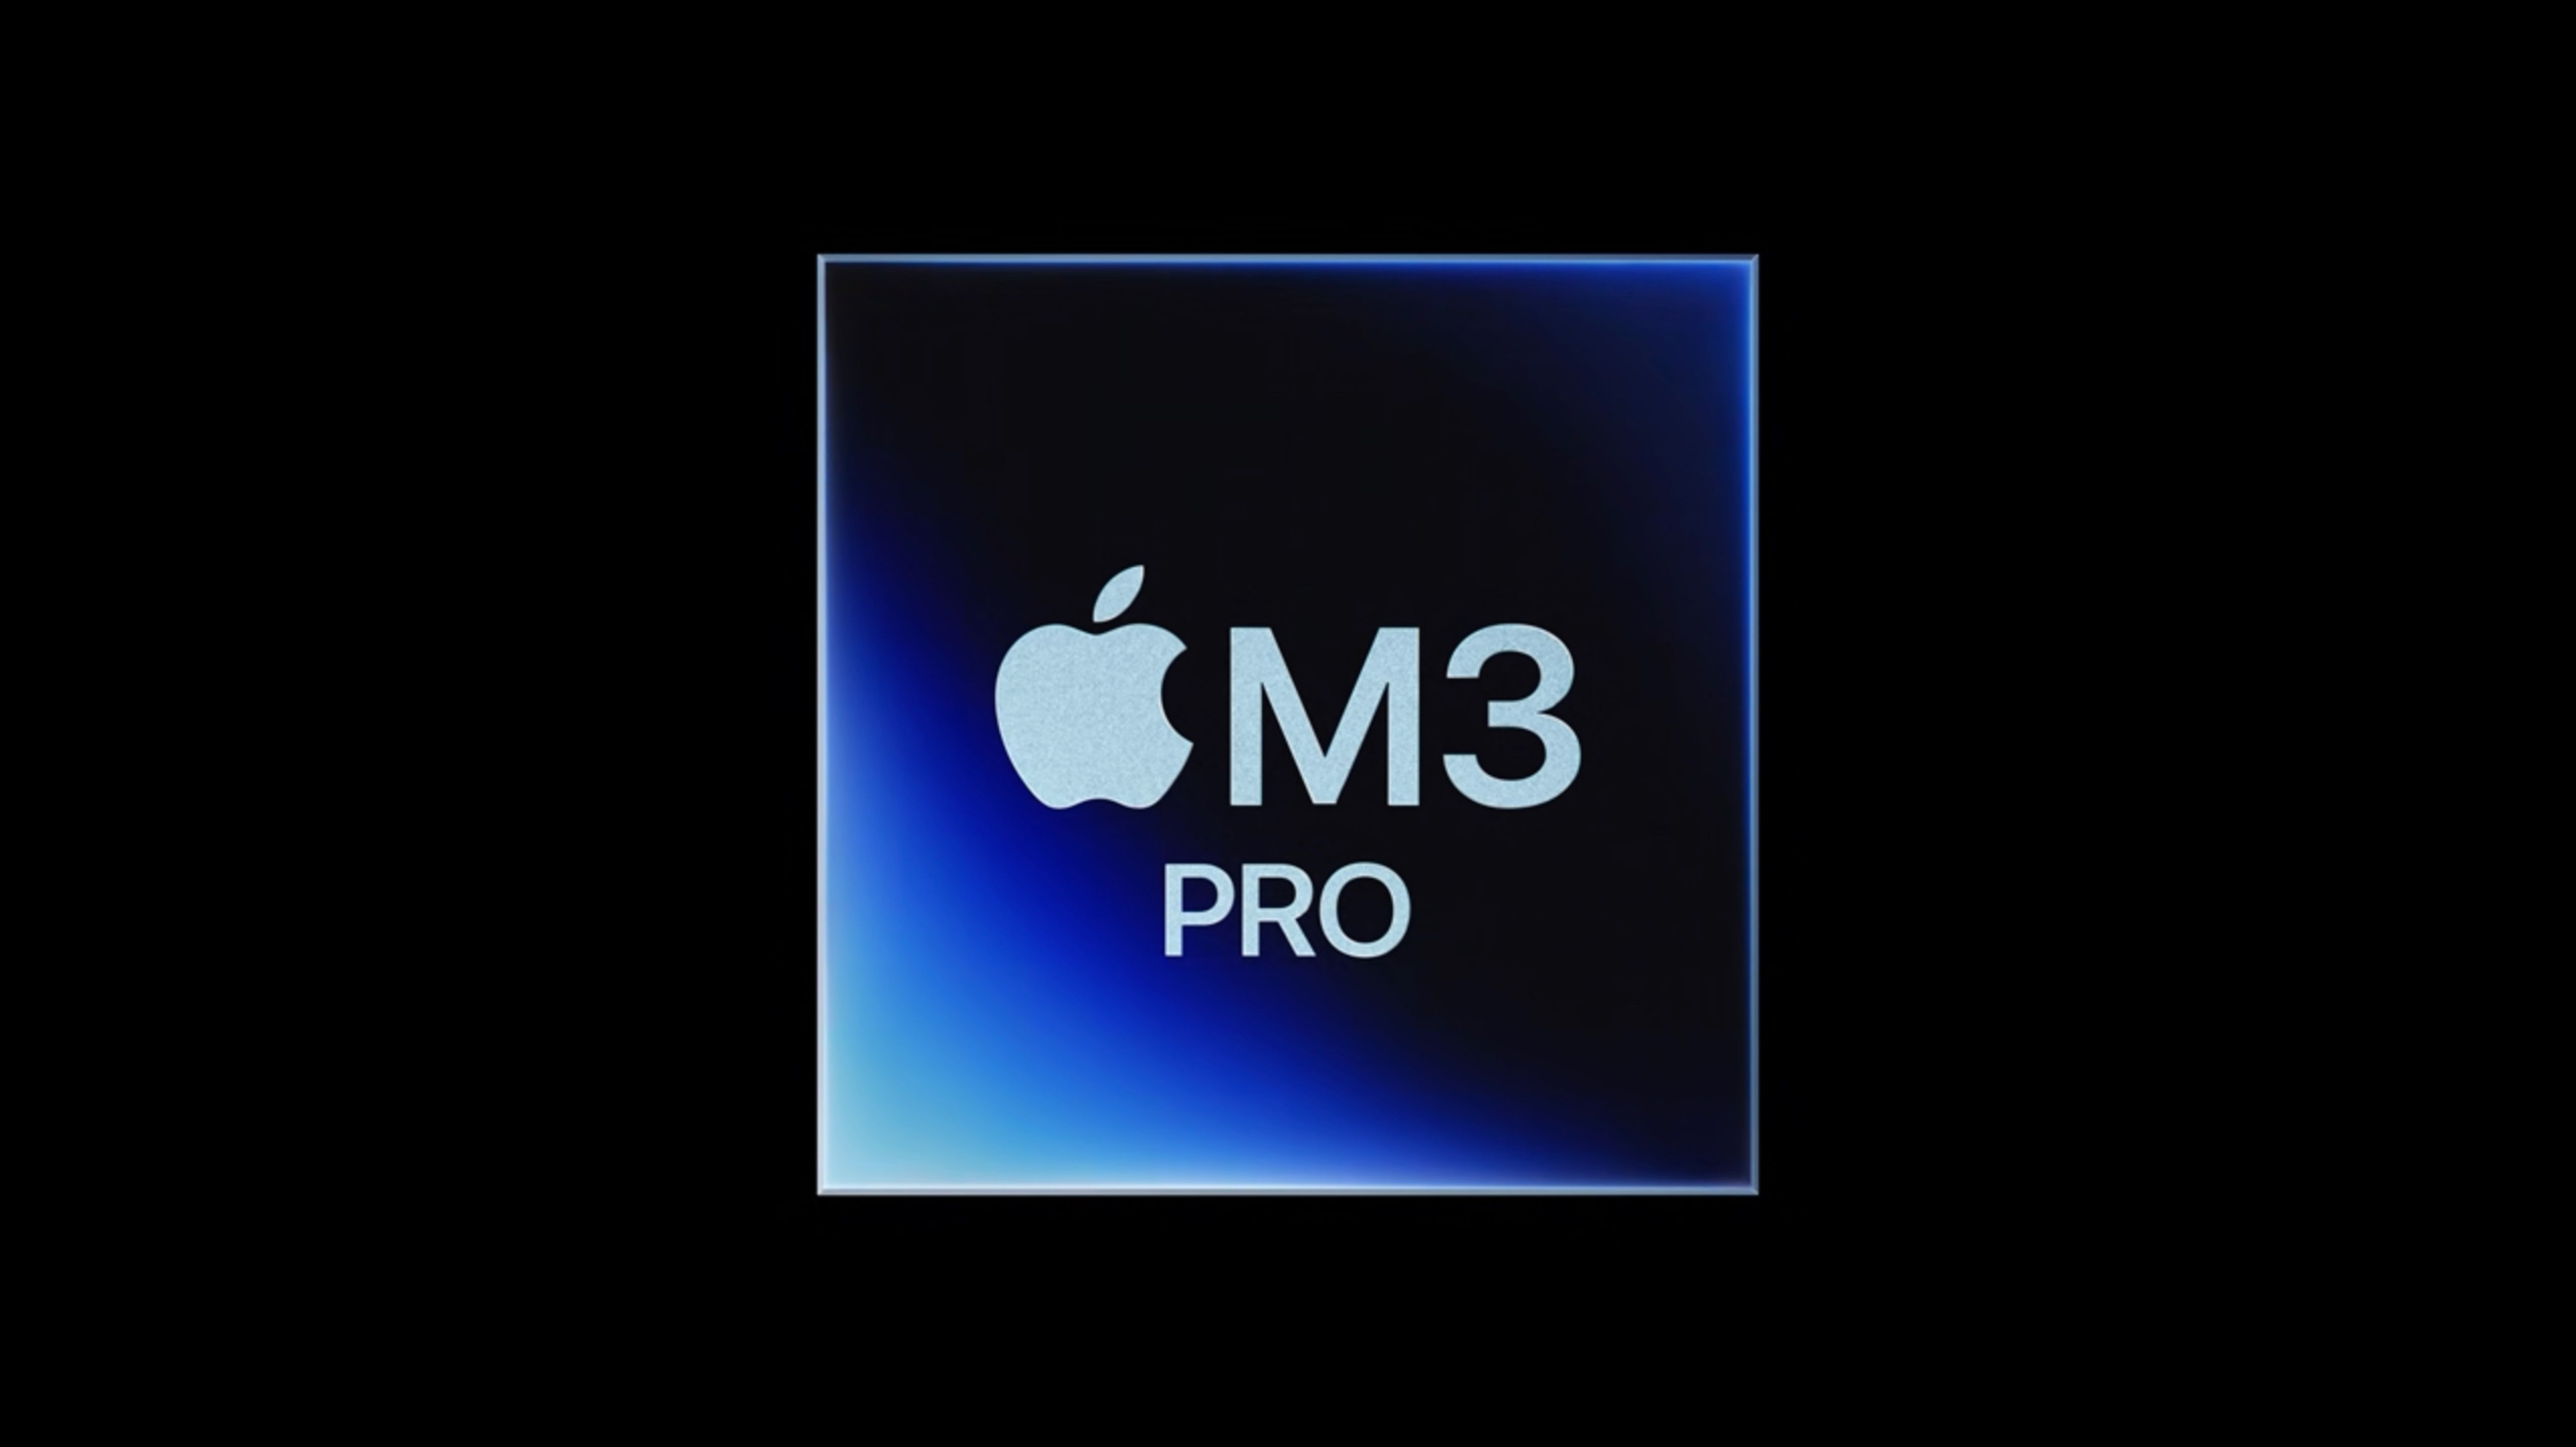 O chip M3 Pro é um pouco mais rápido que o chip M2 Pro em um resultado de benchmark não verificado